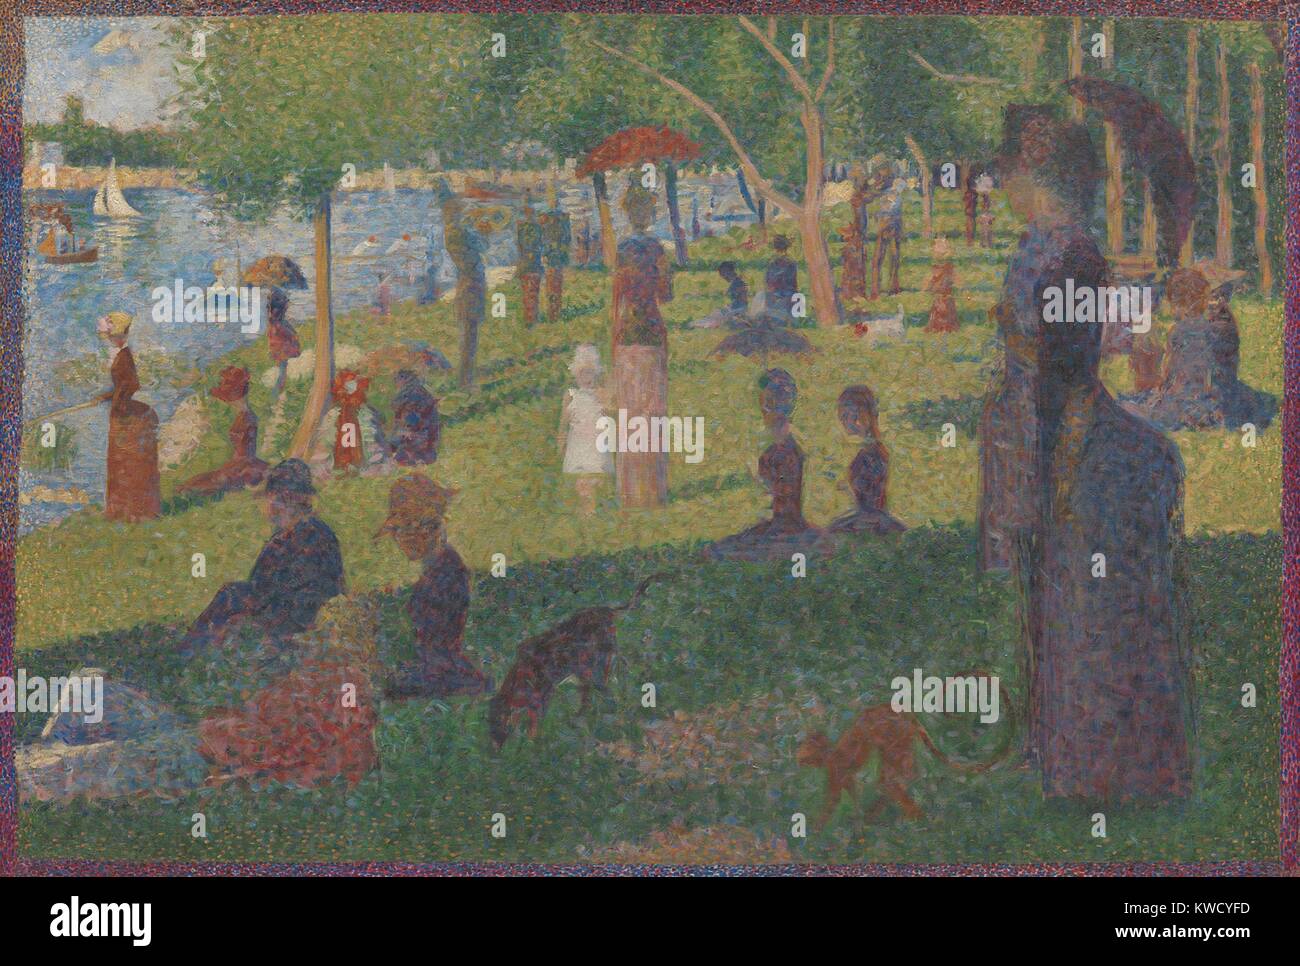 Studie für ein Sonntag auf der Insel La Grande Jatte, von Georges Seurat, 1884, French Post-Impressionist Malerei. Dieses Öl auf Leinwand arbeiten war Seurat's abschließende Studie für sein berühmtestes Gemälde. Es misst 28 bis 31 Zoll, mit Flächen und Formen in einheitlich (BSLOC 2017 5 81 gerendert) Stockfoto